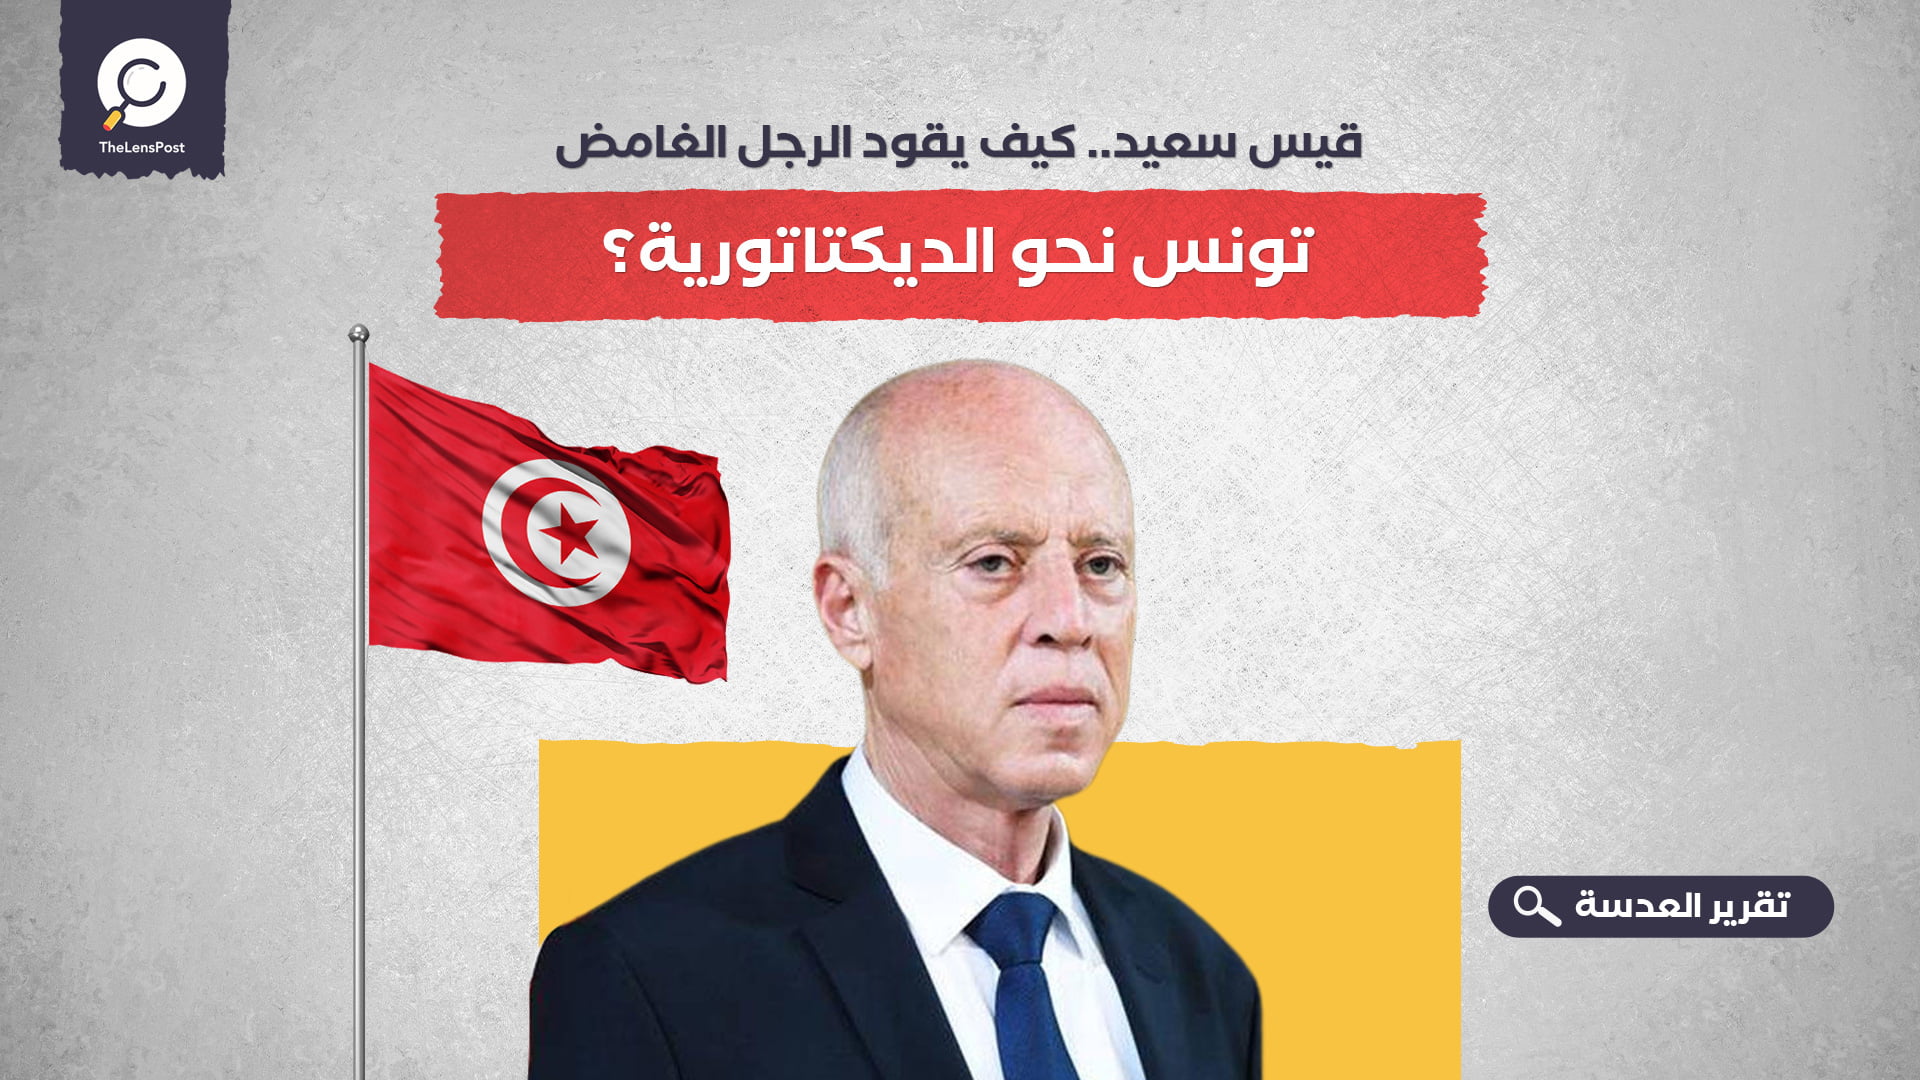 قيس سعيد.. كيف يقود الرجل الغامض تونس نحو الديكتاتورية؟